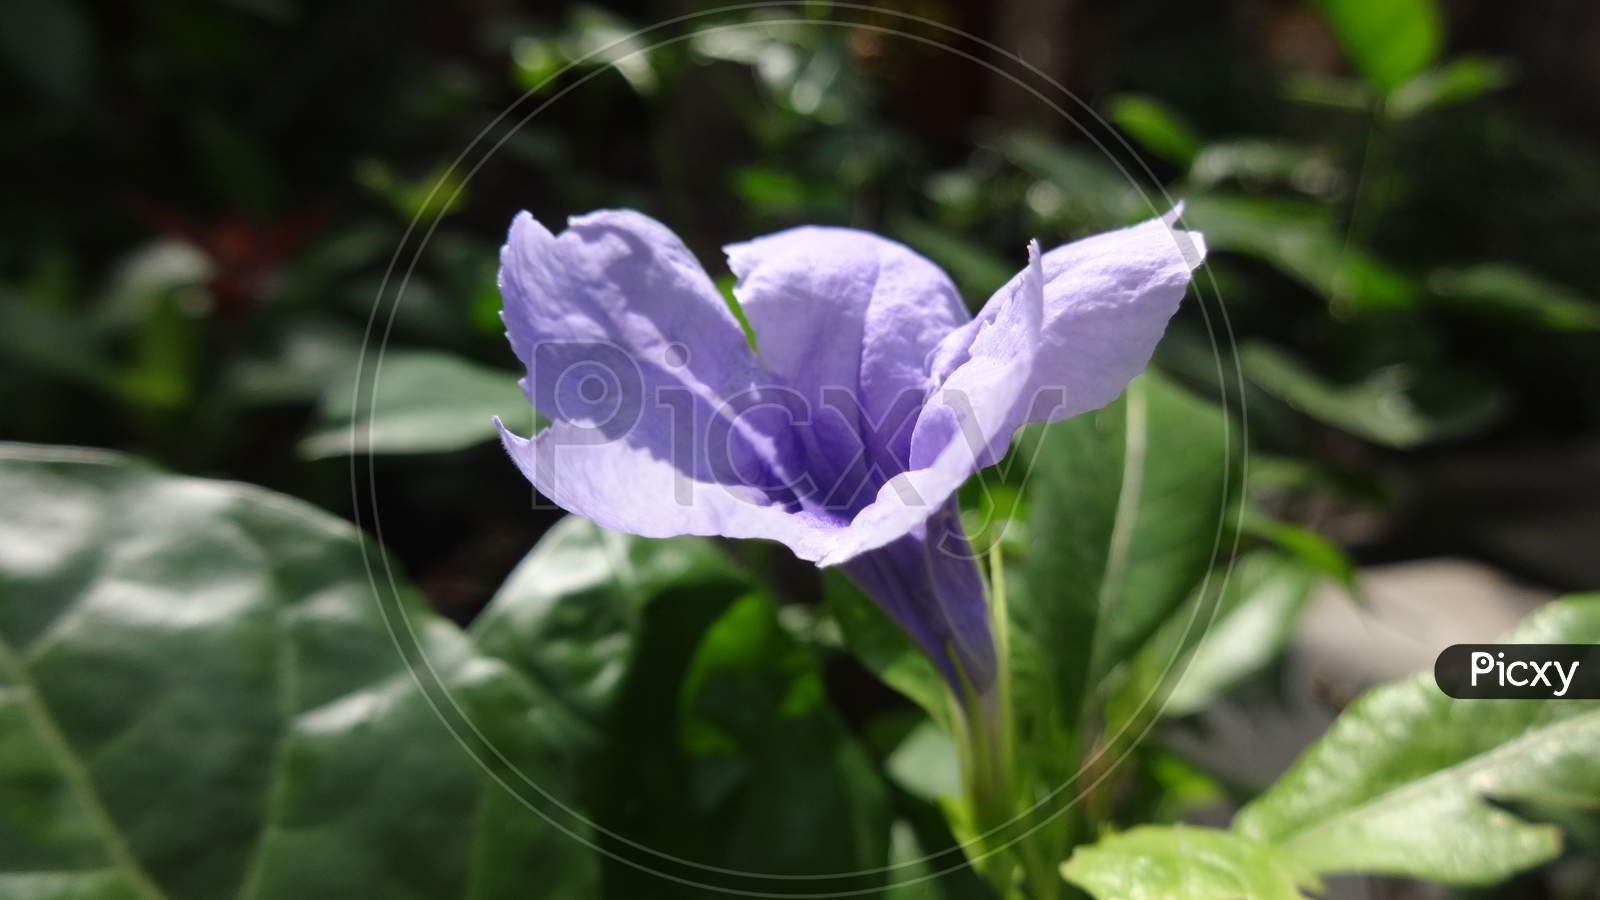 Purple violet bellflower family morning glory flowering plant